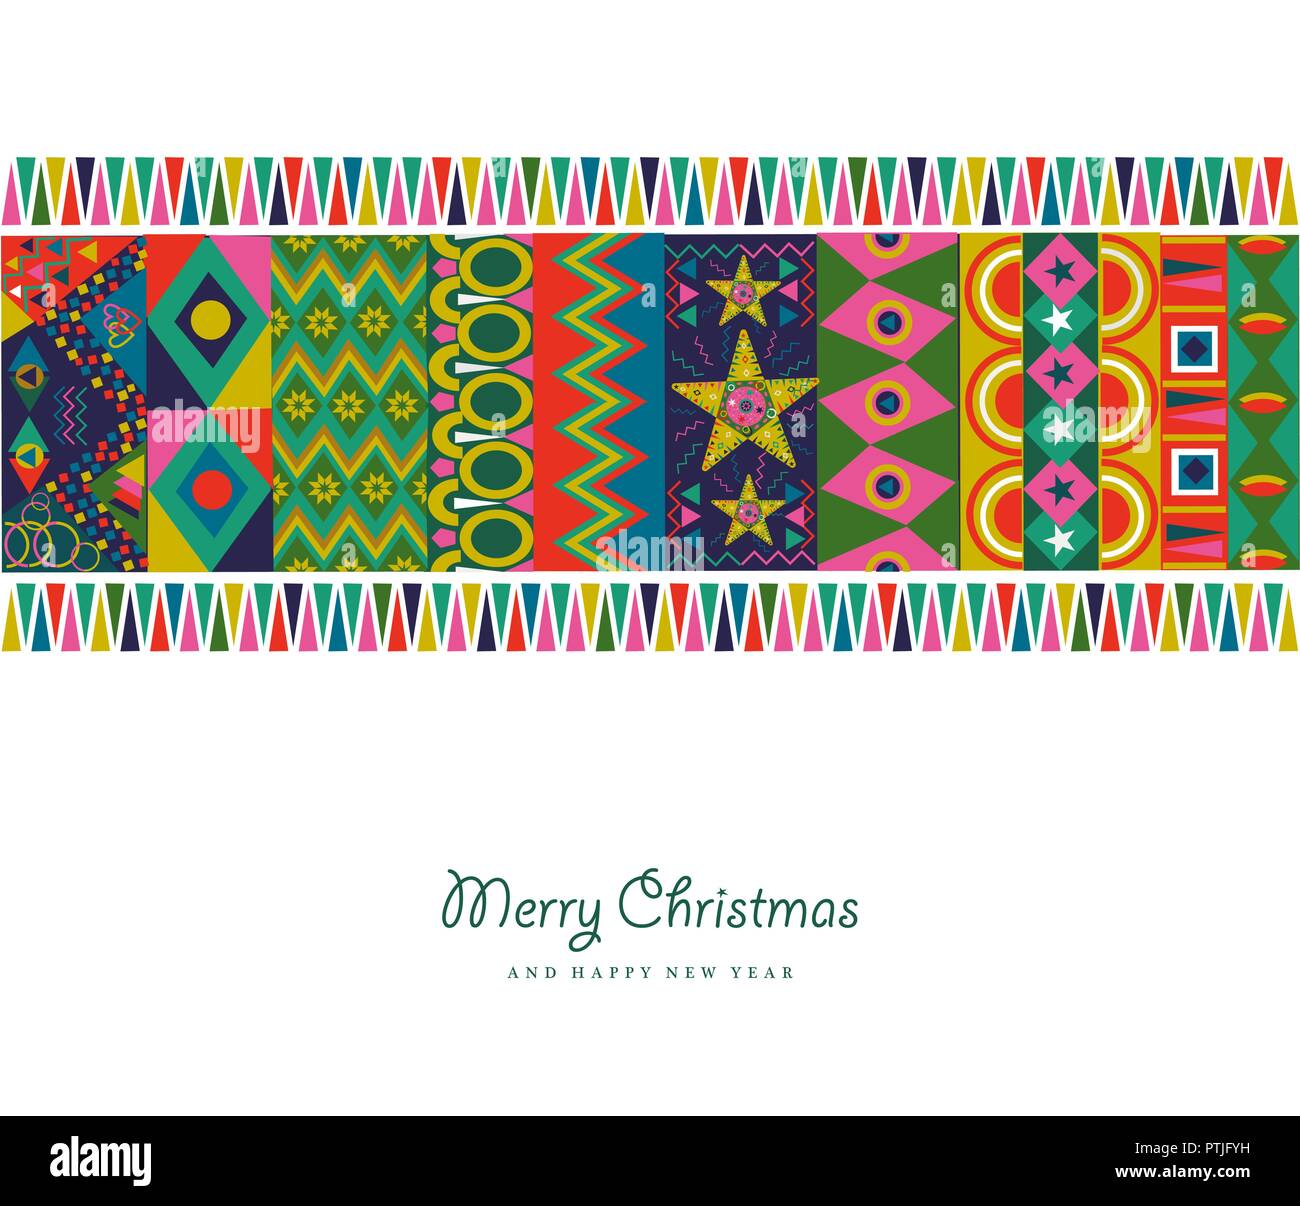 Merry Christmas holiday greeting card illustrazione. Abstract della Boemia decorazione di stile con coloratissime forme geometriche in colori festosi. EPS10 ve Illustrazione Vettoriale